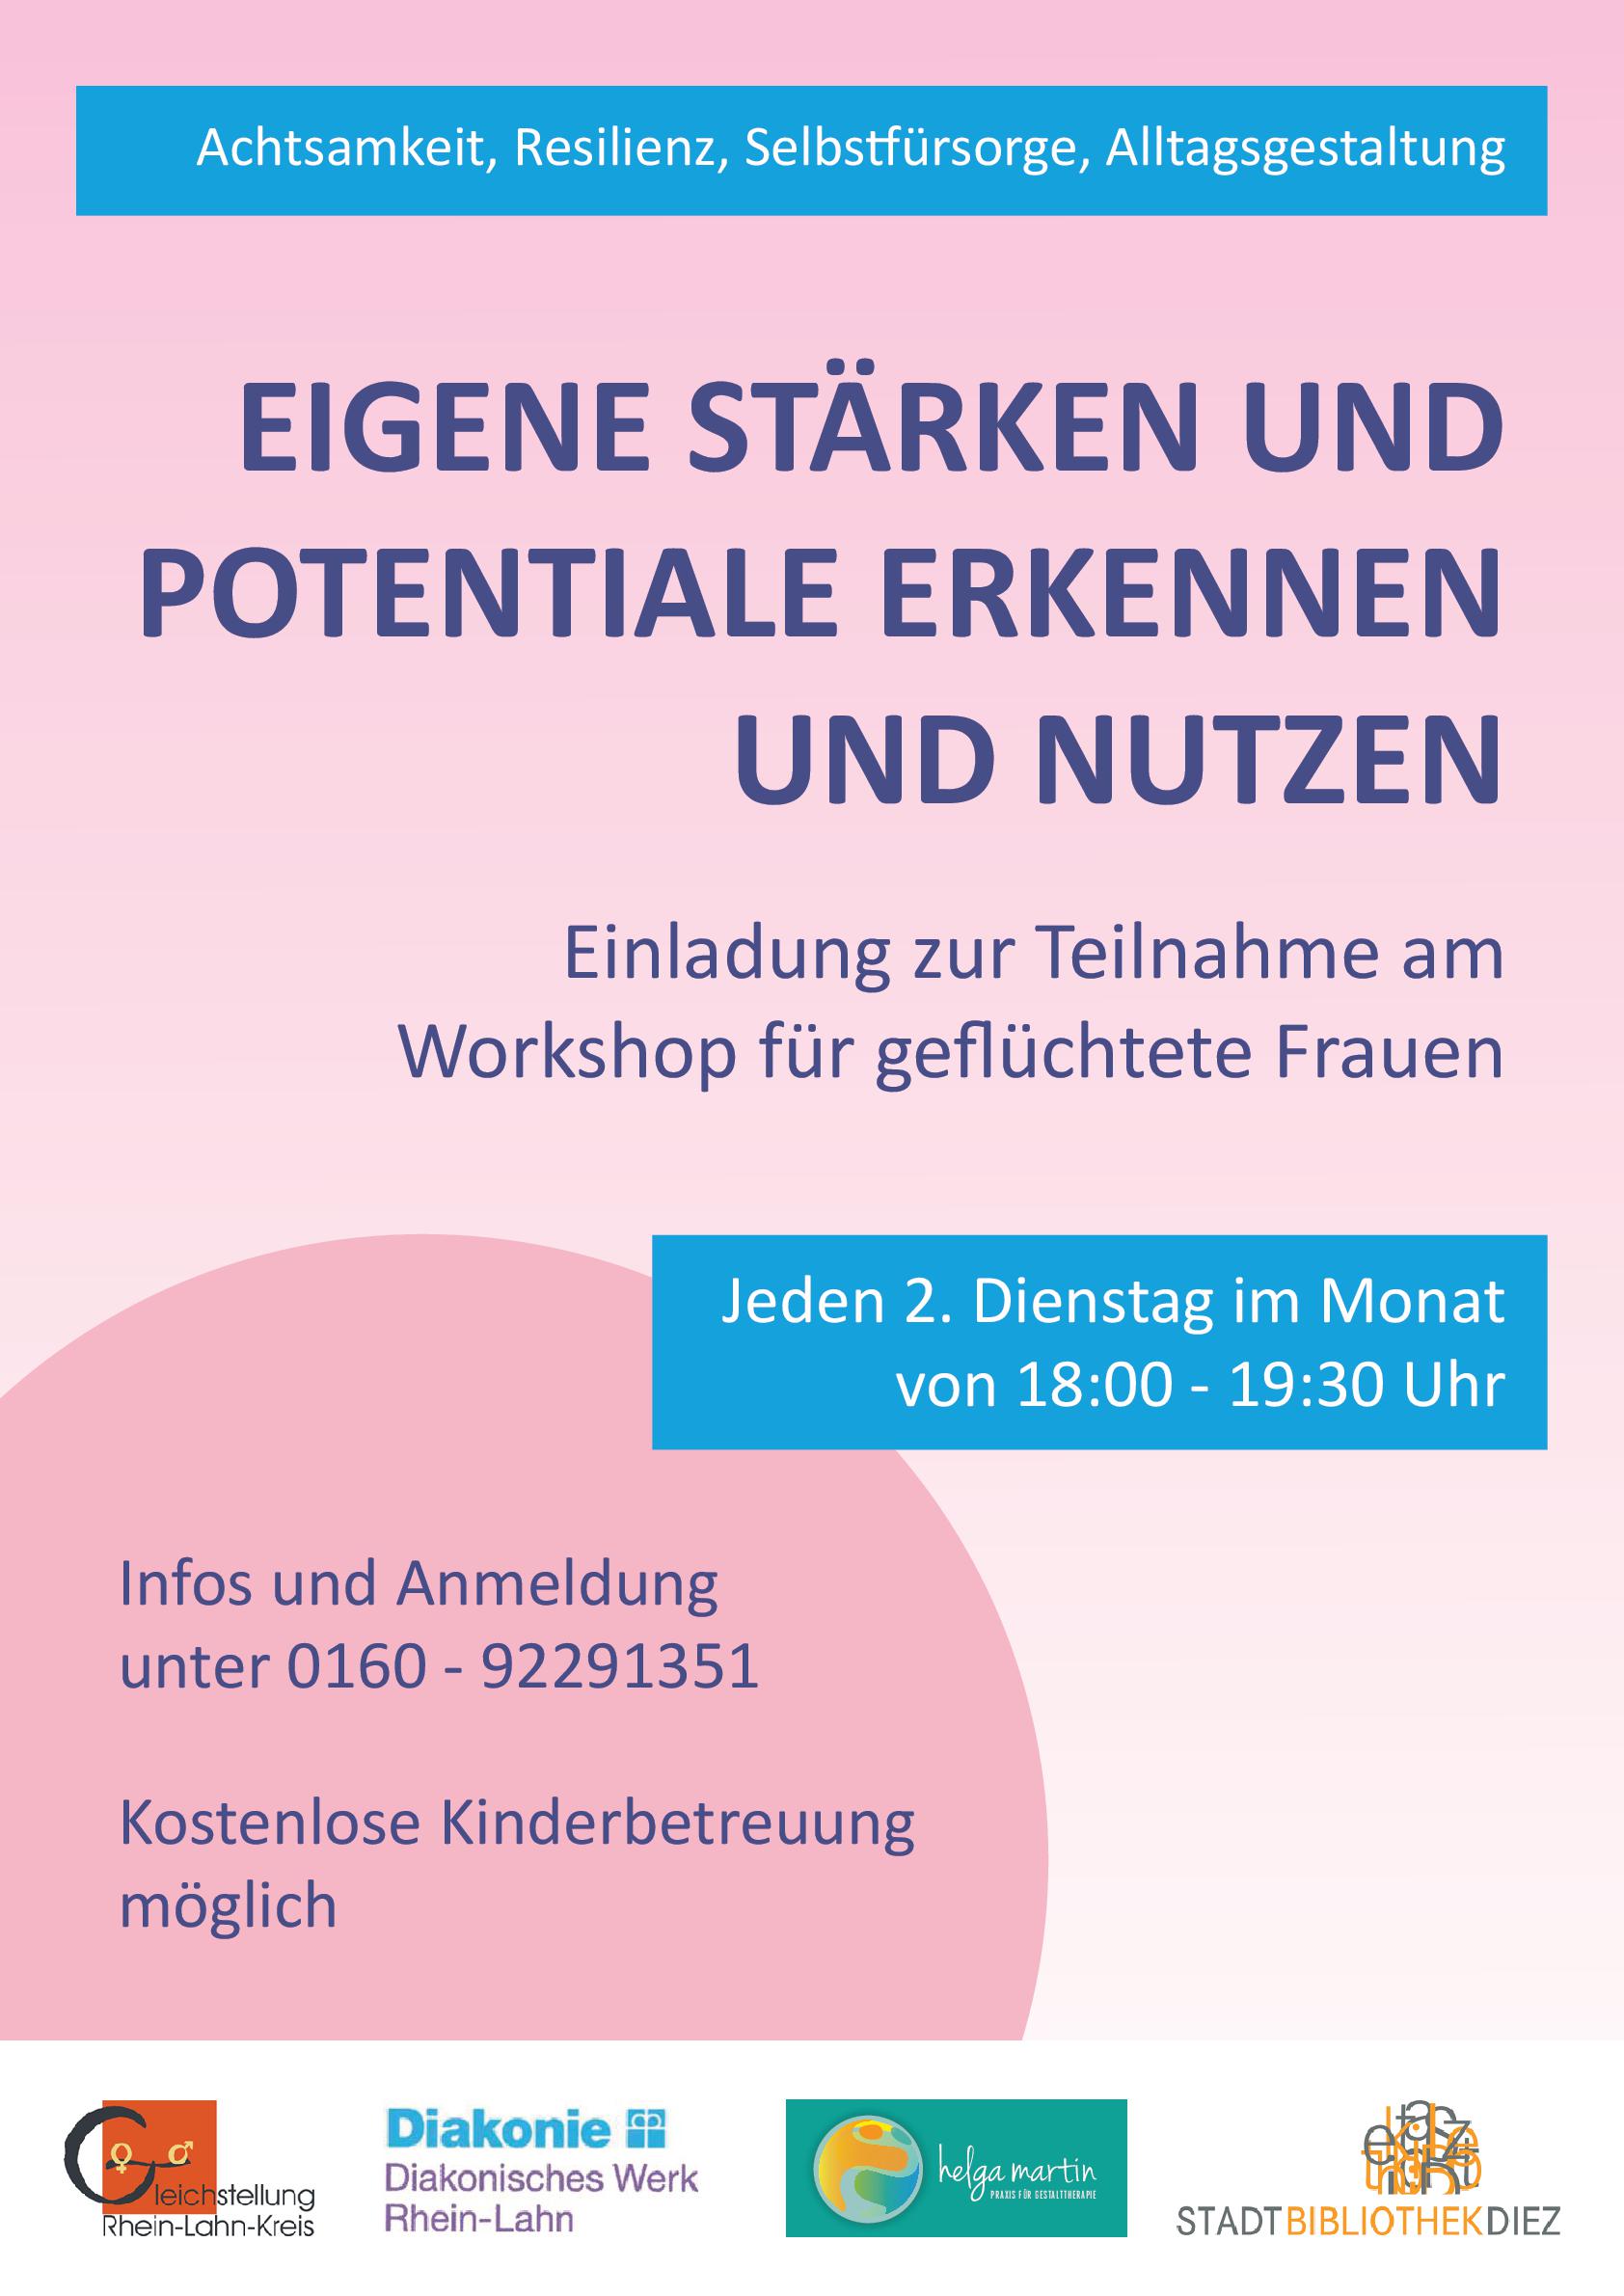 Workshop für geflüchtete Frauen